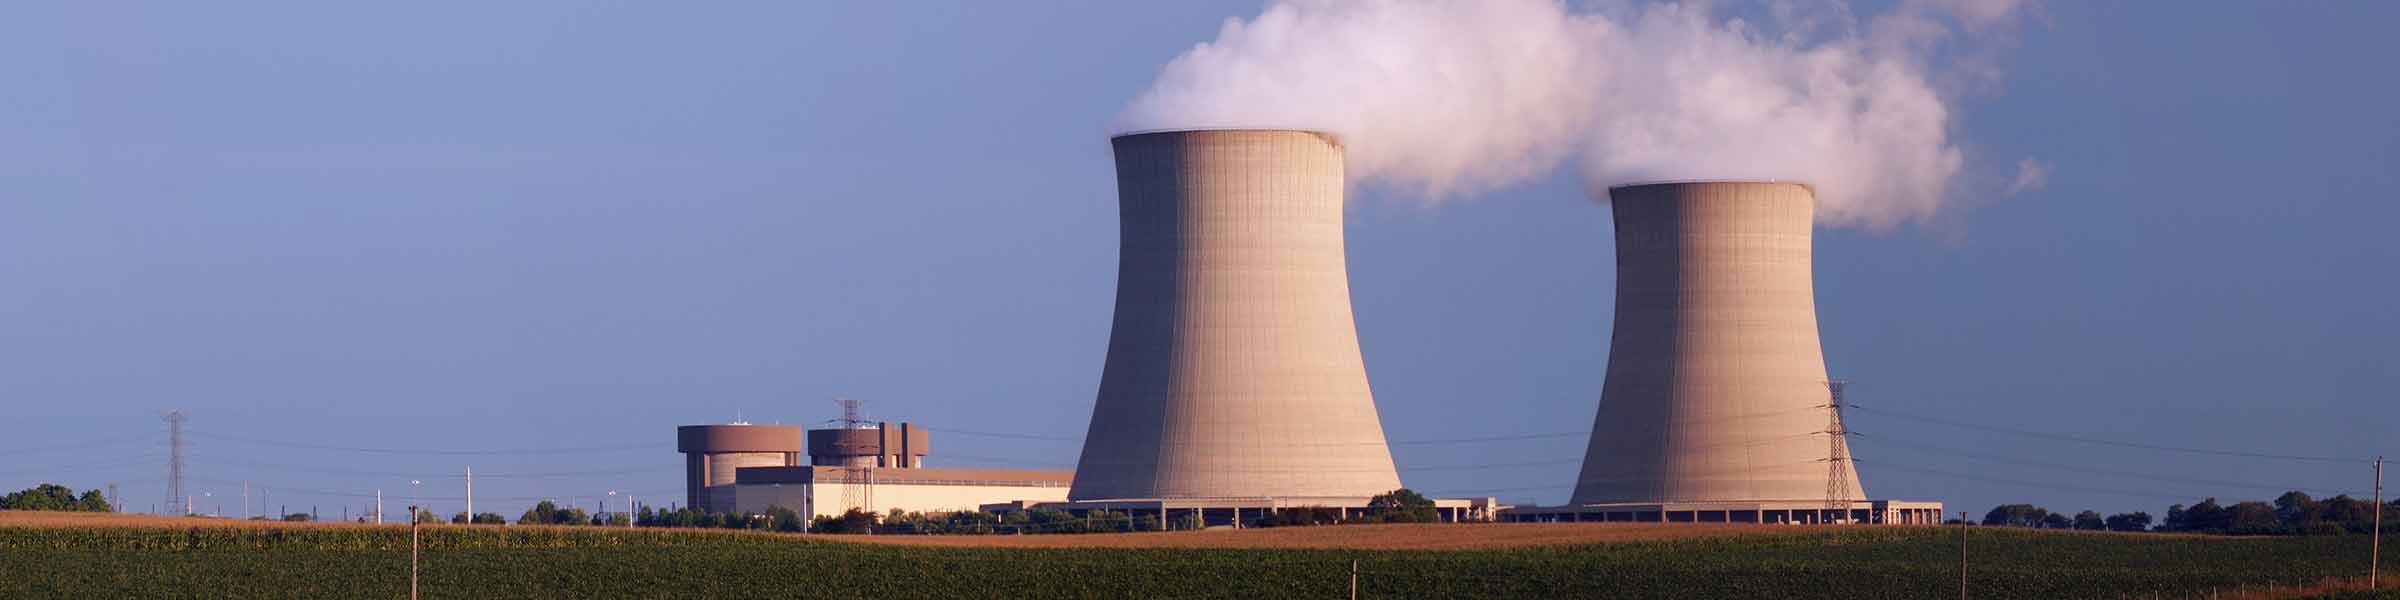 ban nuclear power